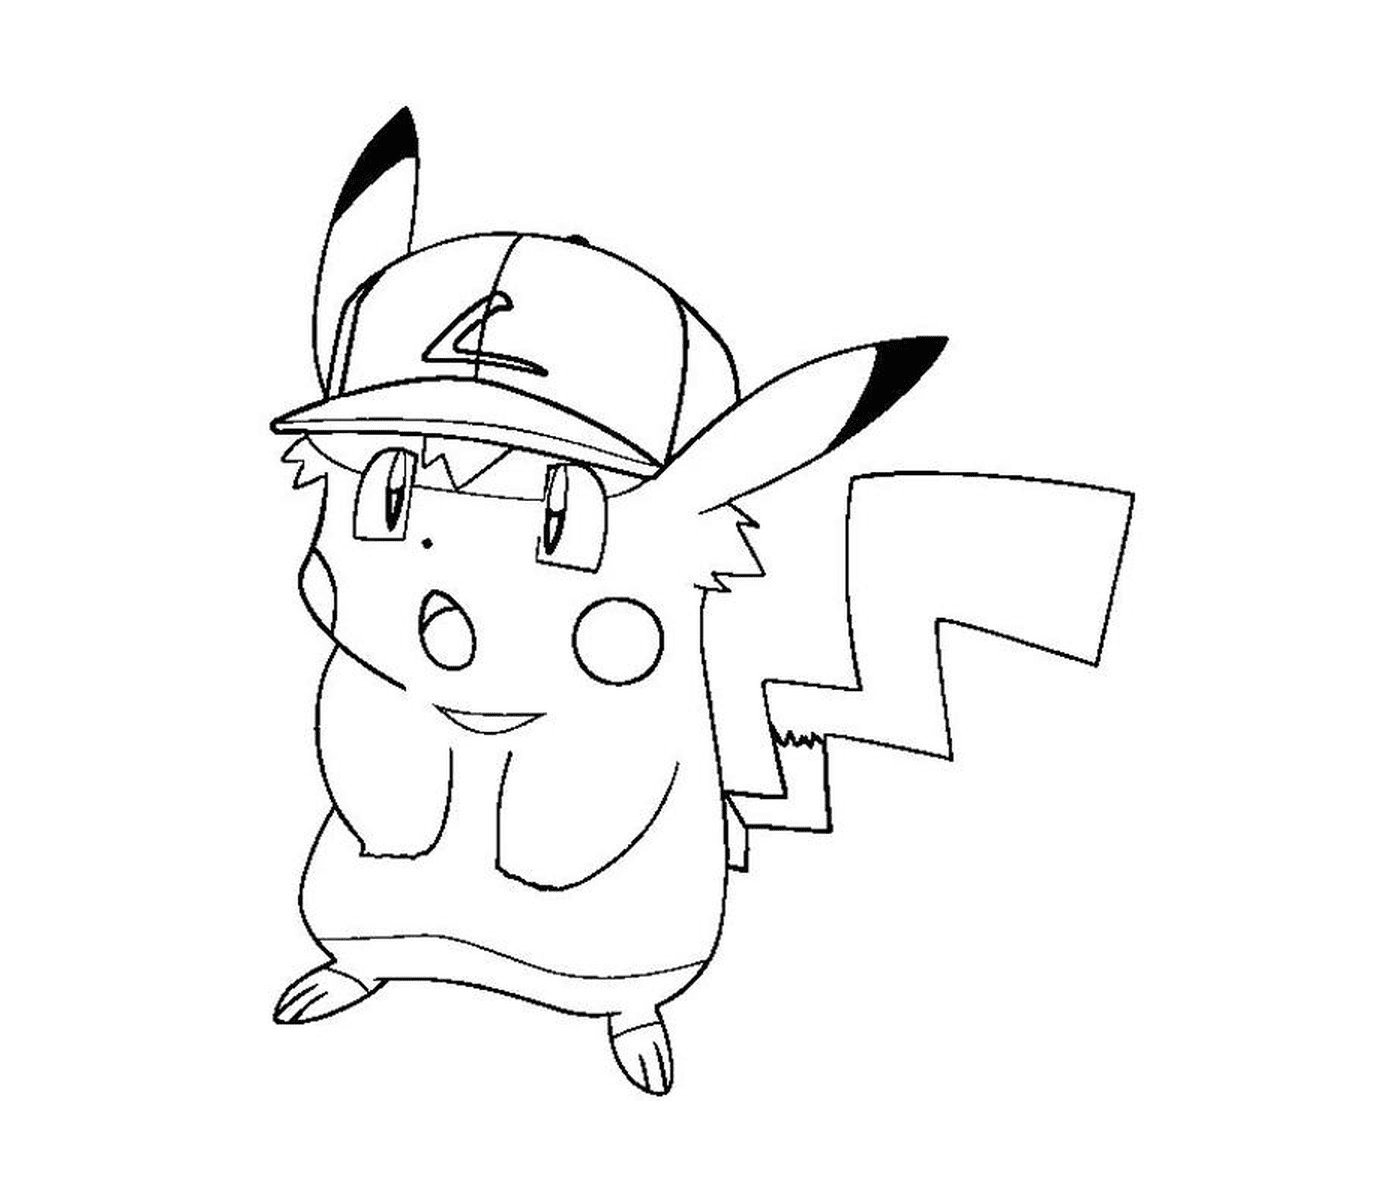  Pikachu stilizzato con un cappuccio 